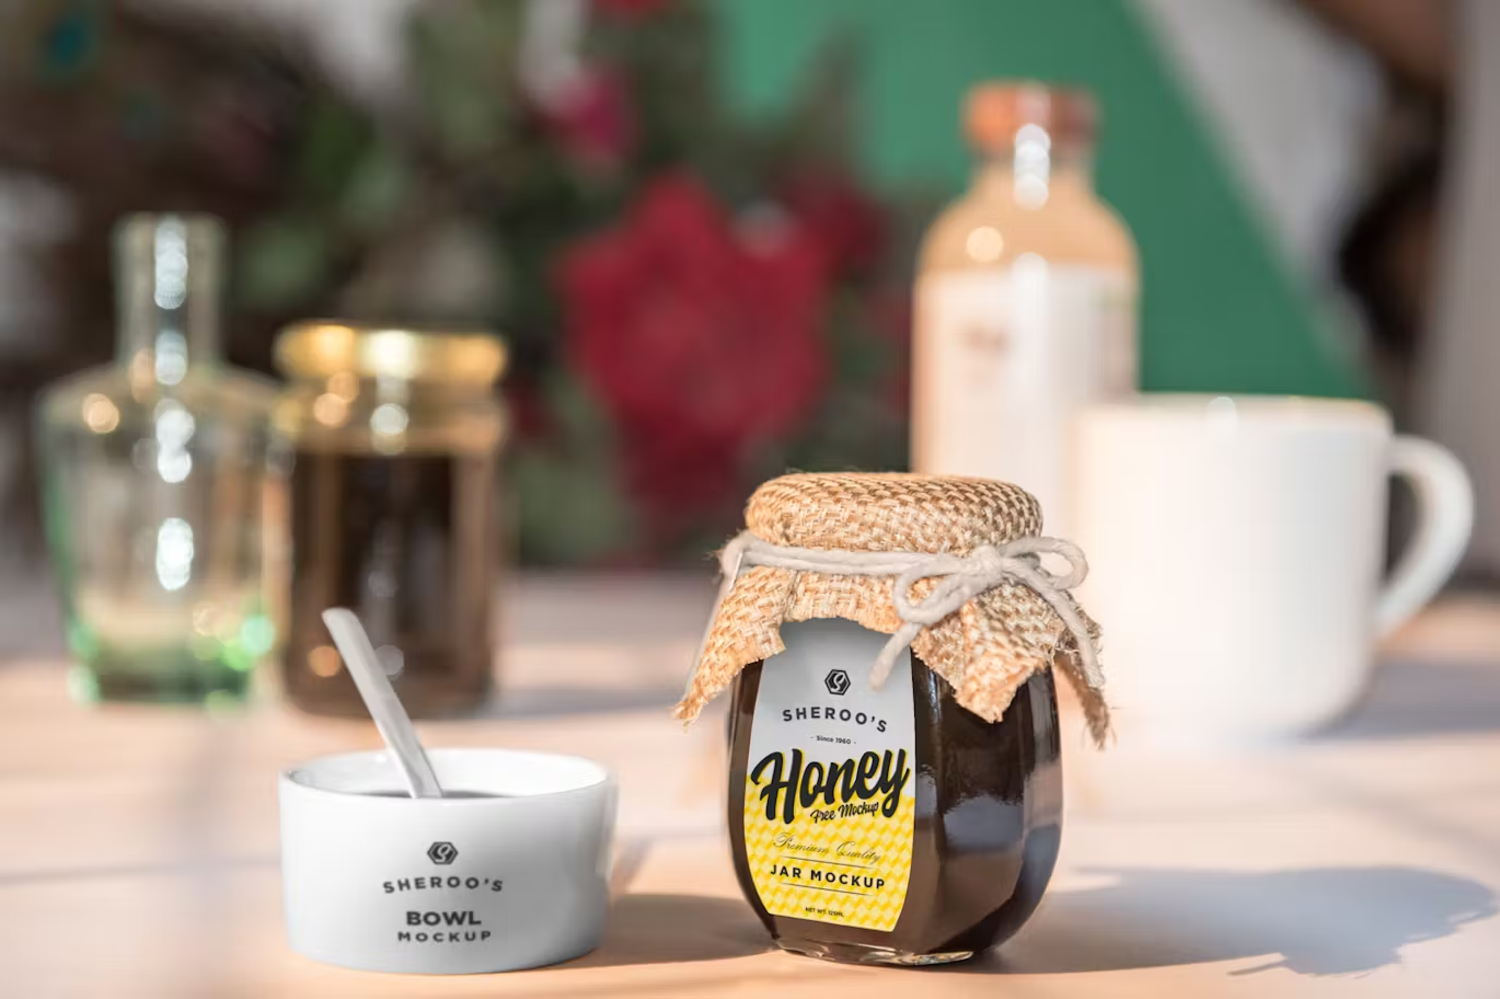 5890 个性化蜂蜜罐模型样机-Honey Jar Mockups